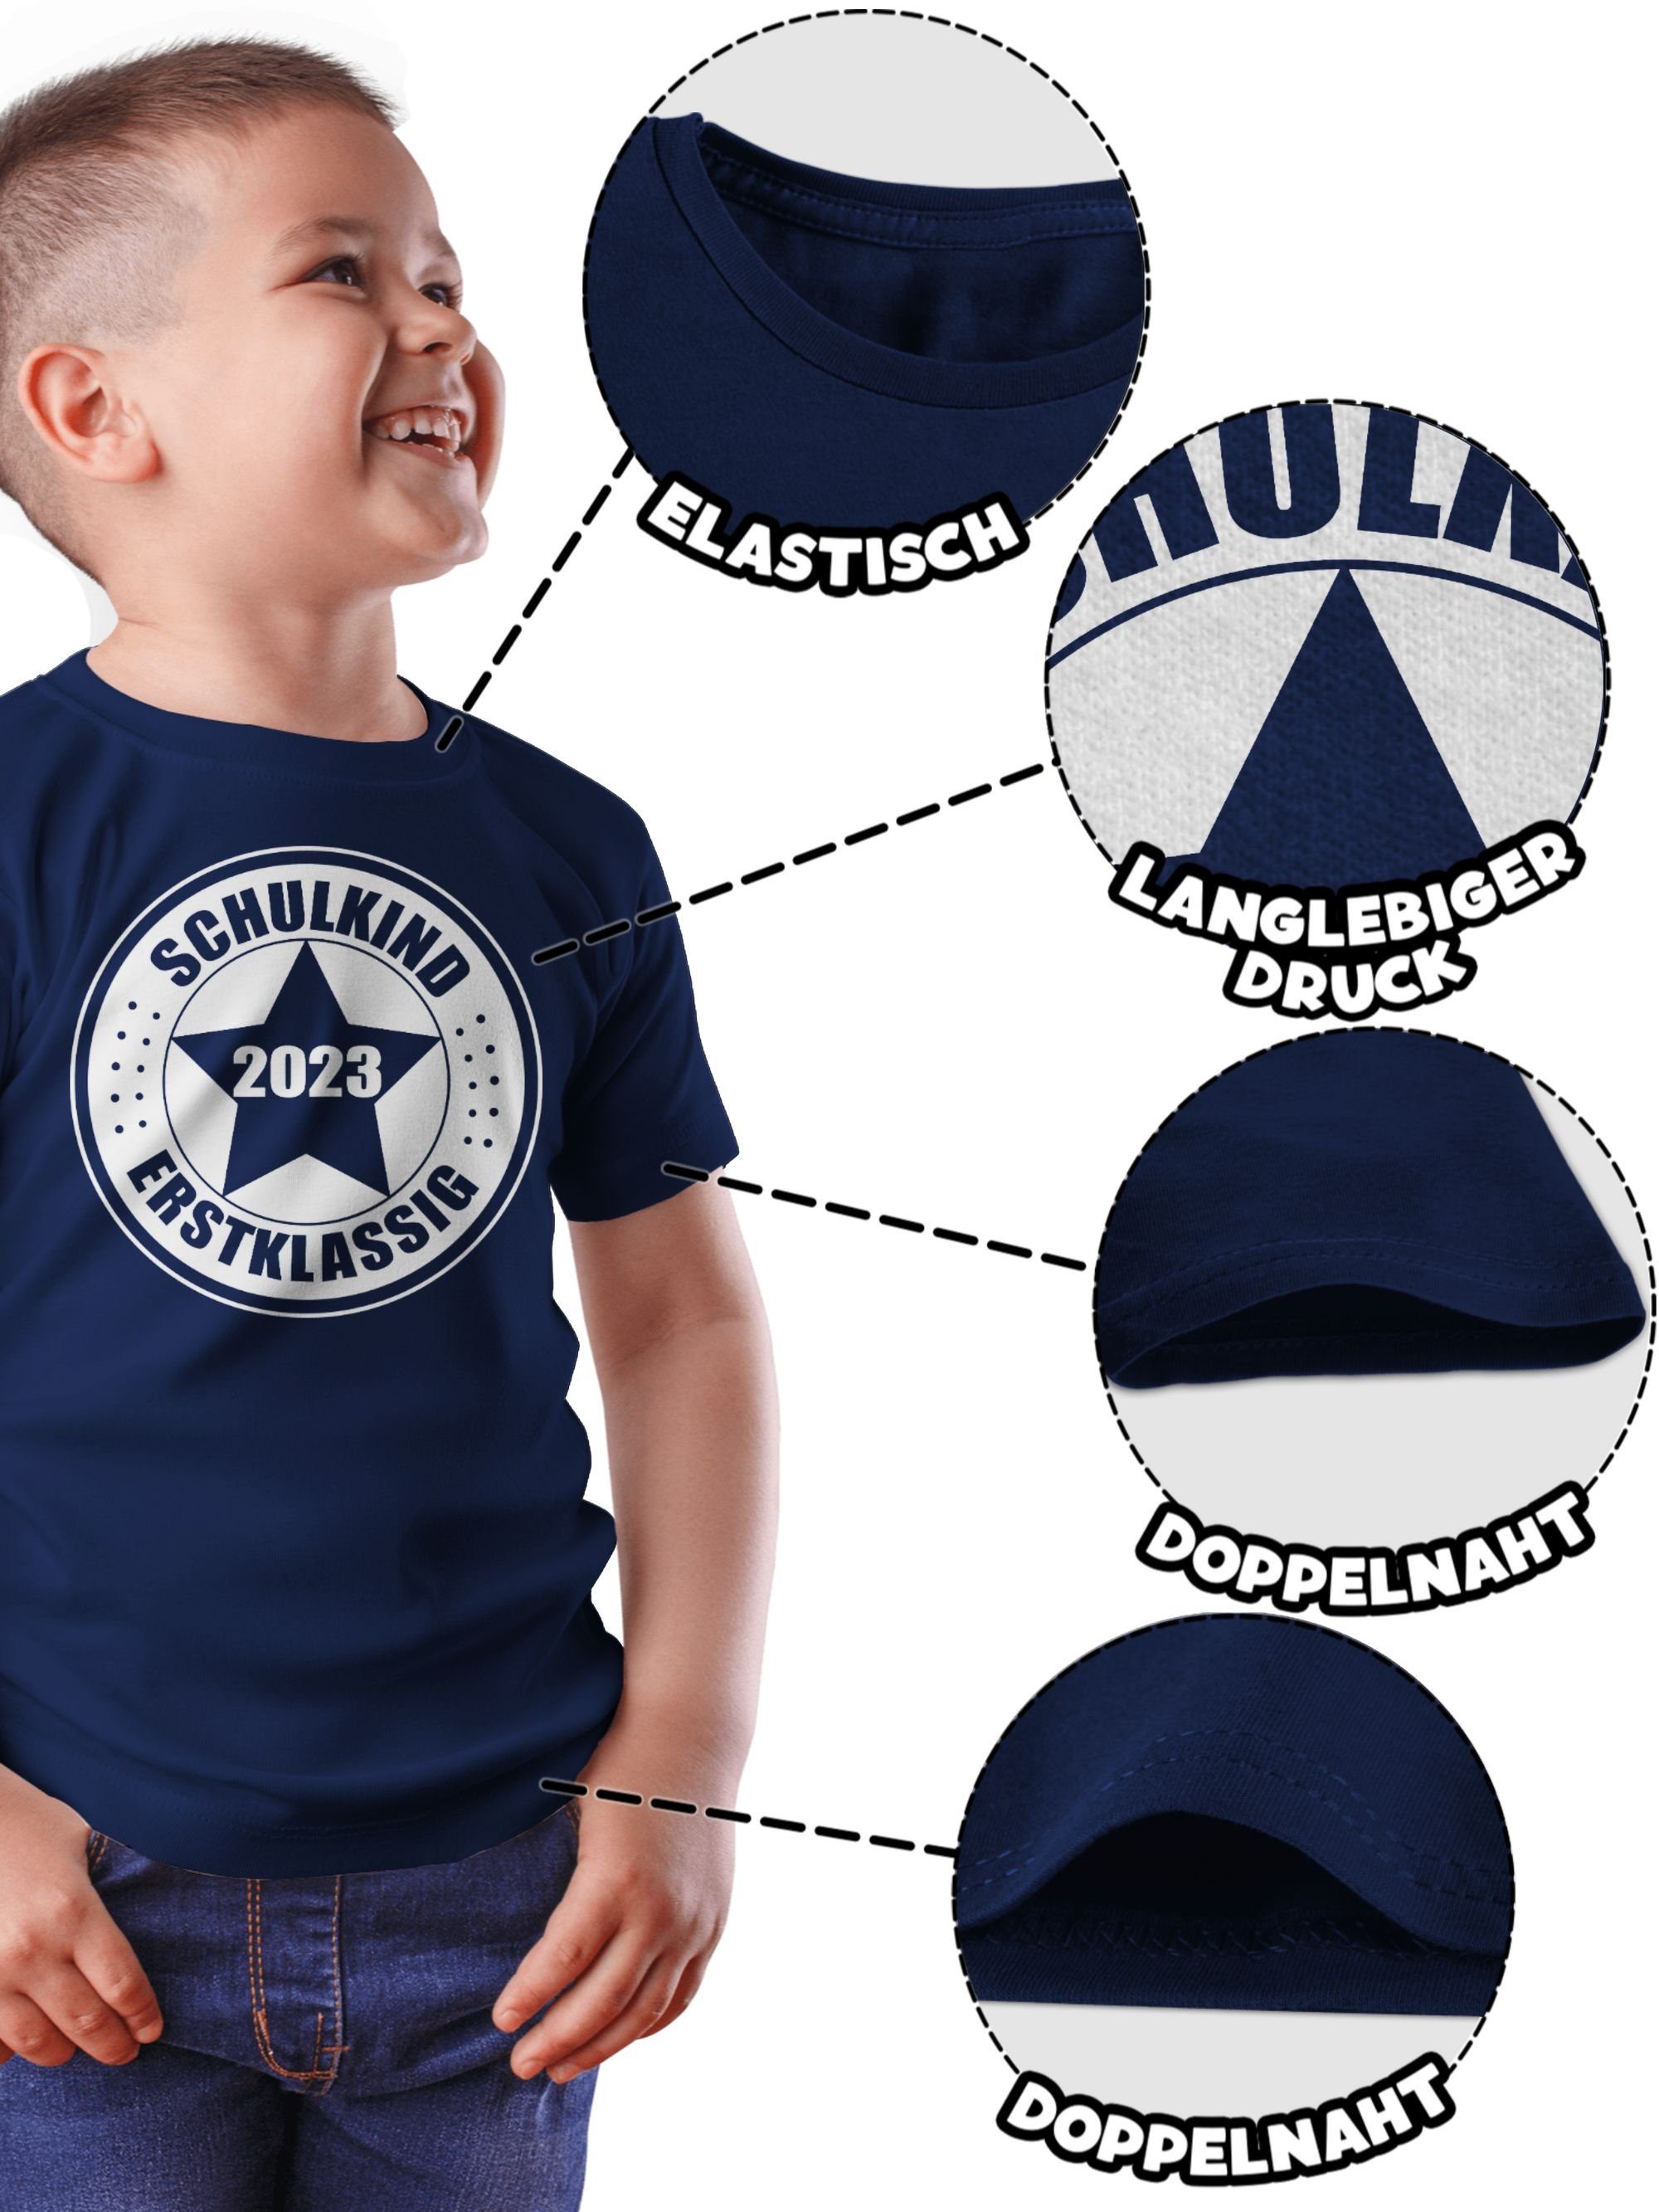 Shirtracer T-Shirt Einschulung Geschenke Schulanfang 2023 Erstklassig - 2 Schulkind Junge Dunkelblau